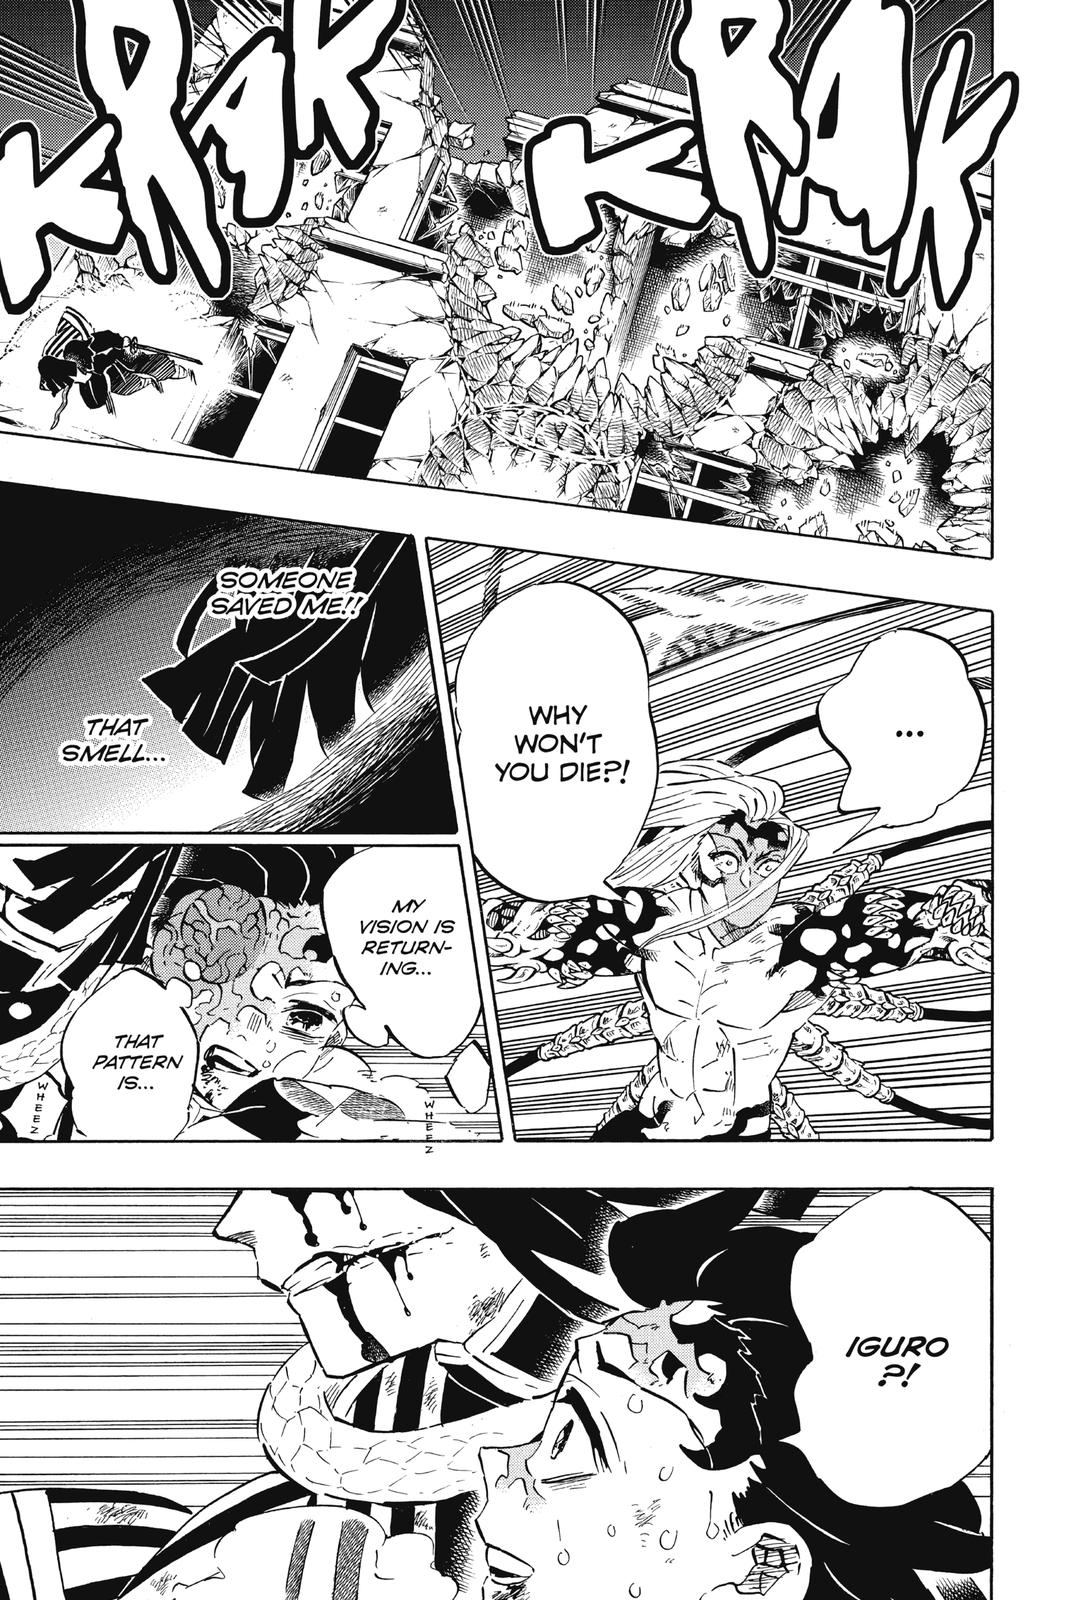 Demon Slayer Manga Manga Chapter - 194 - image 9